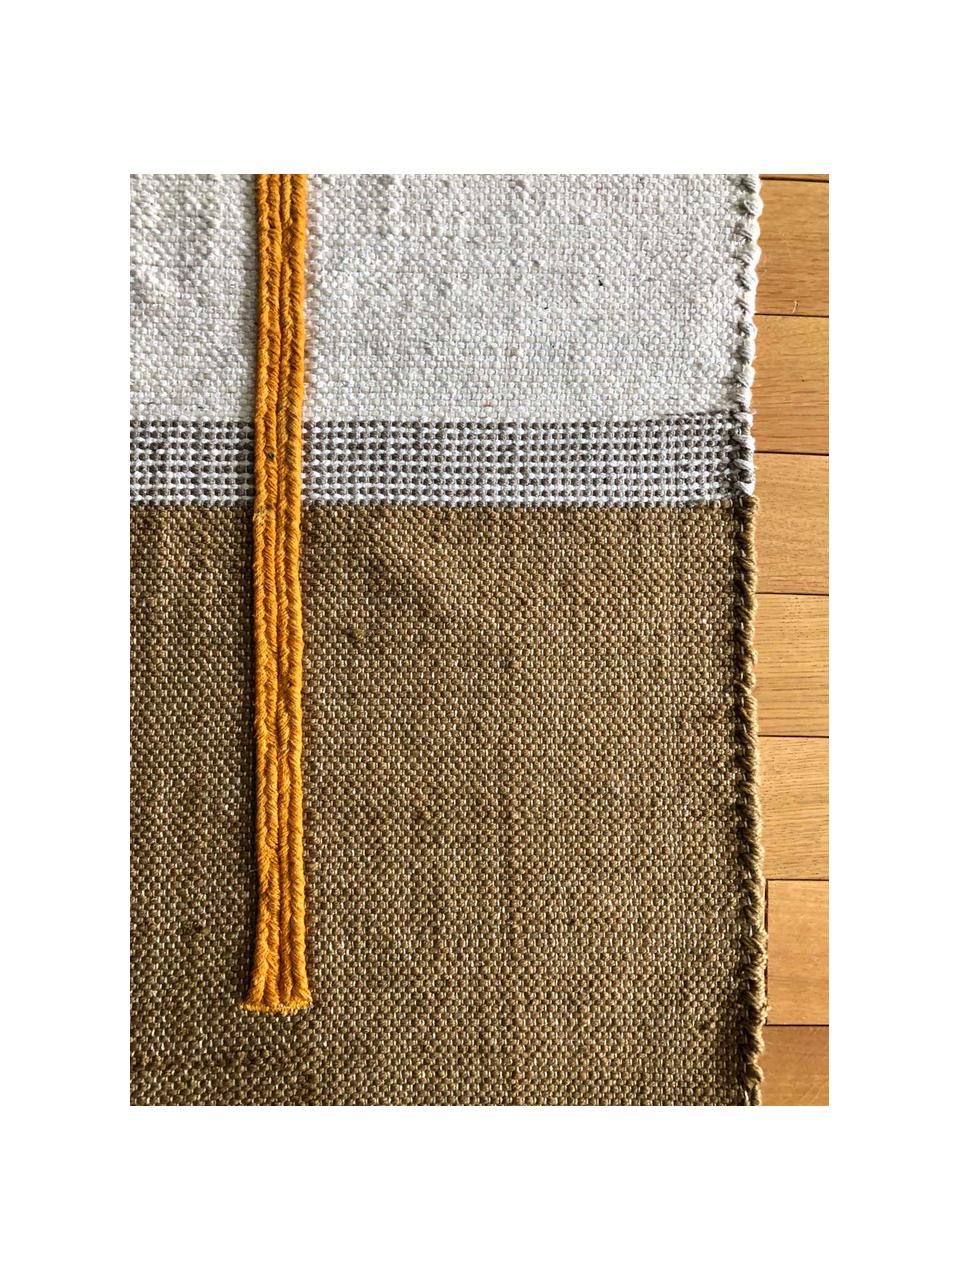 Tapis en coton tissé à la main Atlas, Coton, jute, Blanc cassé, brun, orange, larg. 110 x long. 160 cm (taille S)